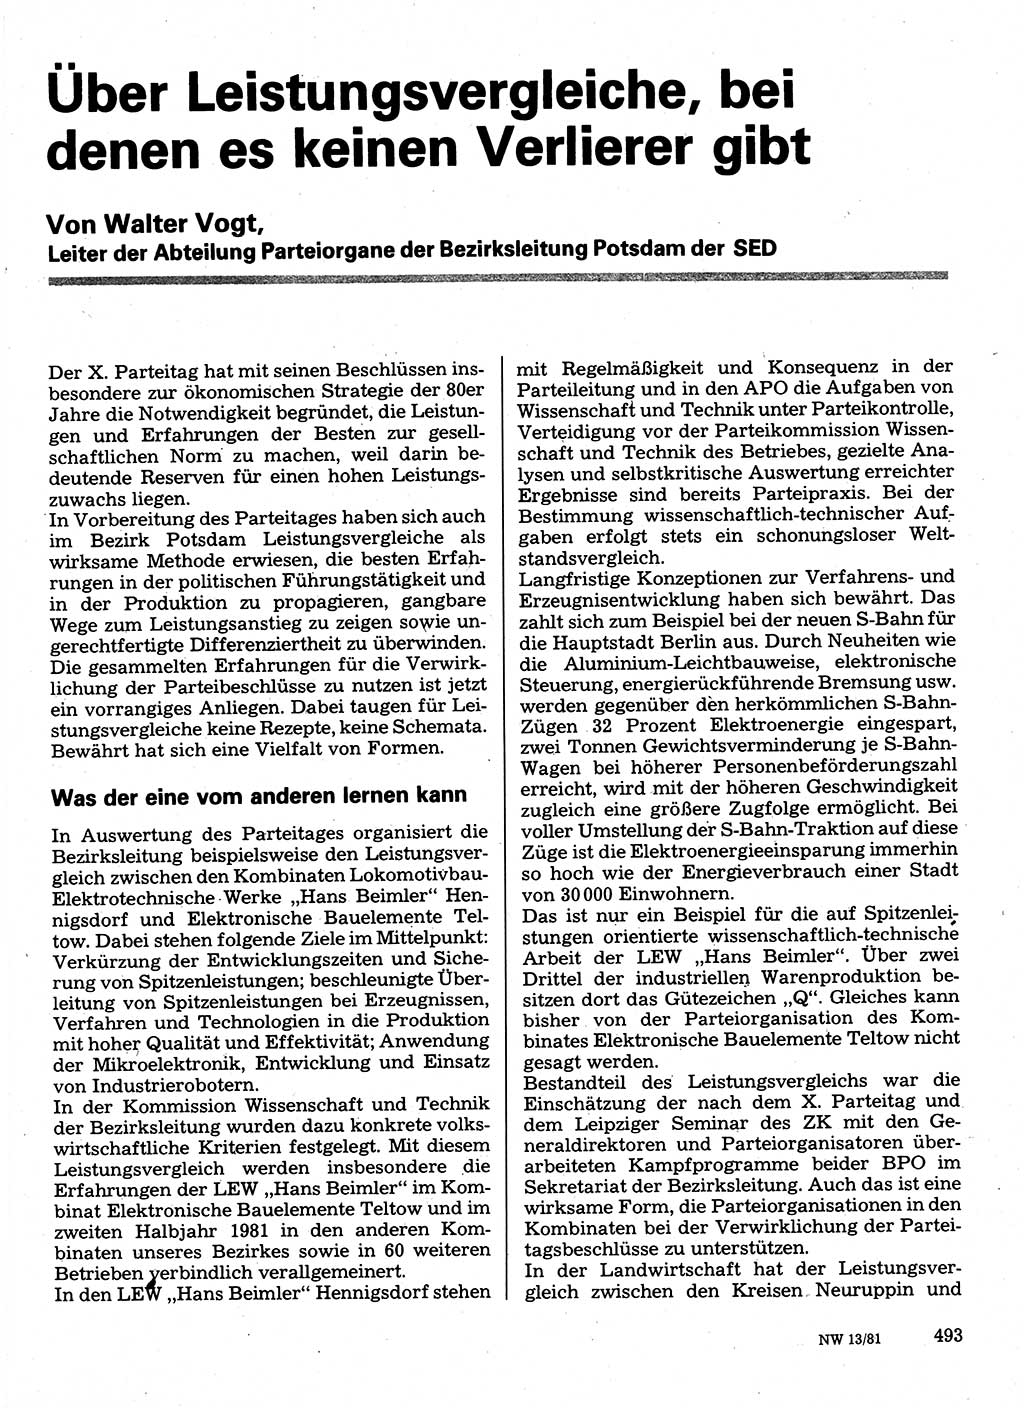 Neuer Weg (NW), Organ des Zentralkomitees (ZK) der SED (Sozialistische Einheitspartei Deutschlands) für Fragen des Parteilebens, 36. Jahrgang [Deutsche Demokratische Republik (DDR)] 1981, Seite 493 (NW ZK SED DDR 1981, S. 493)